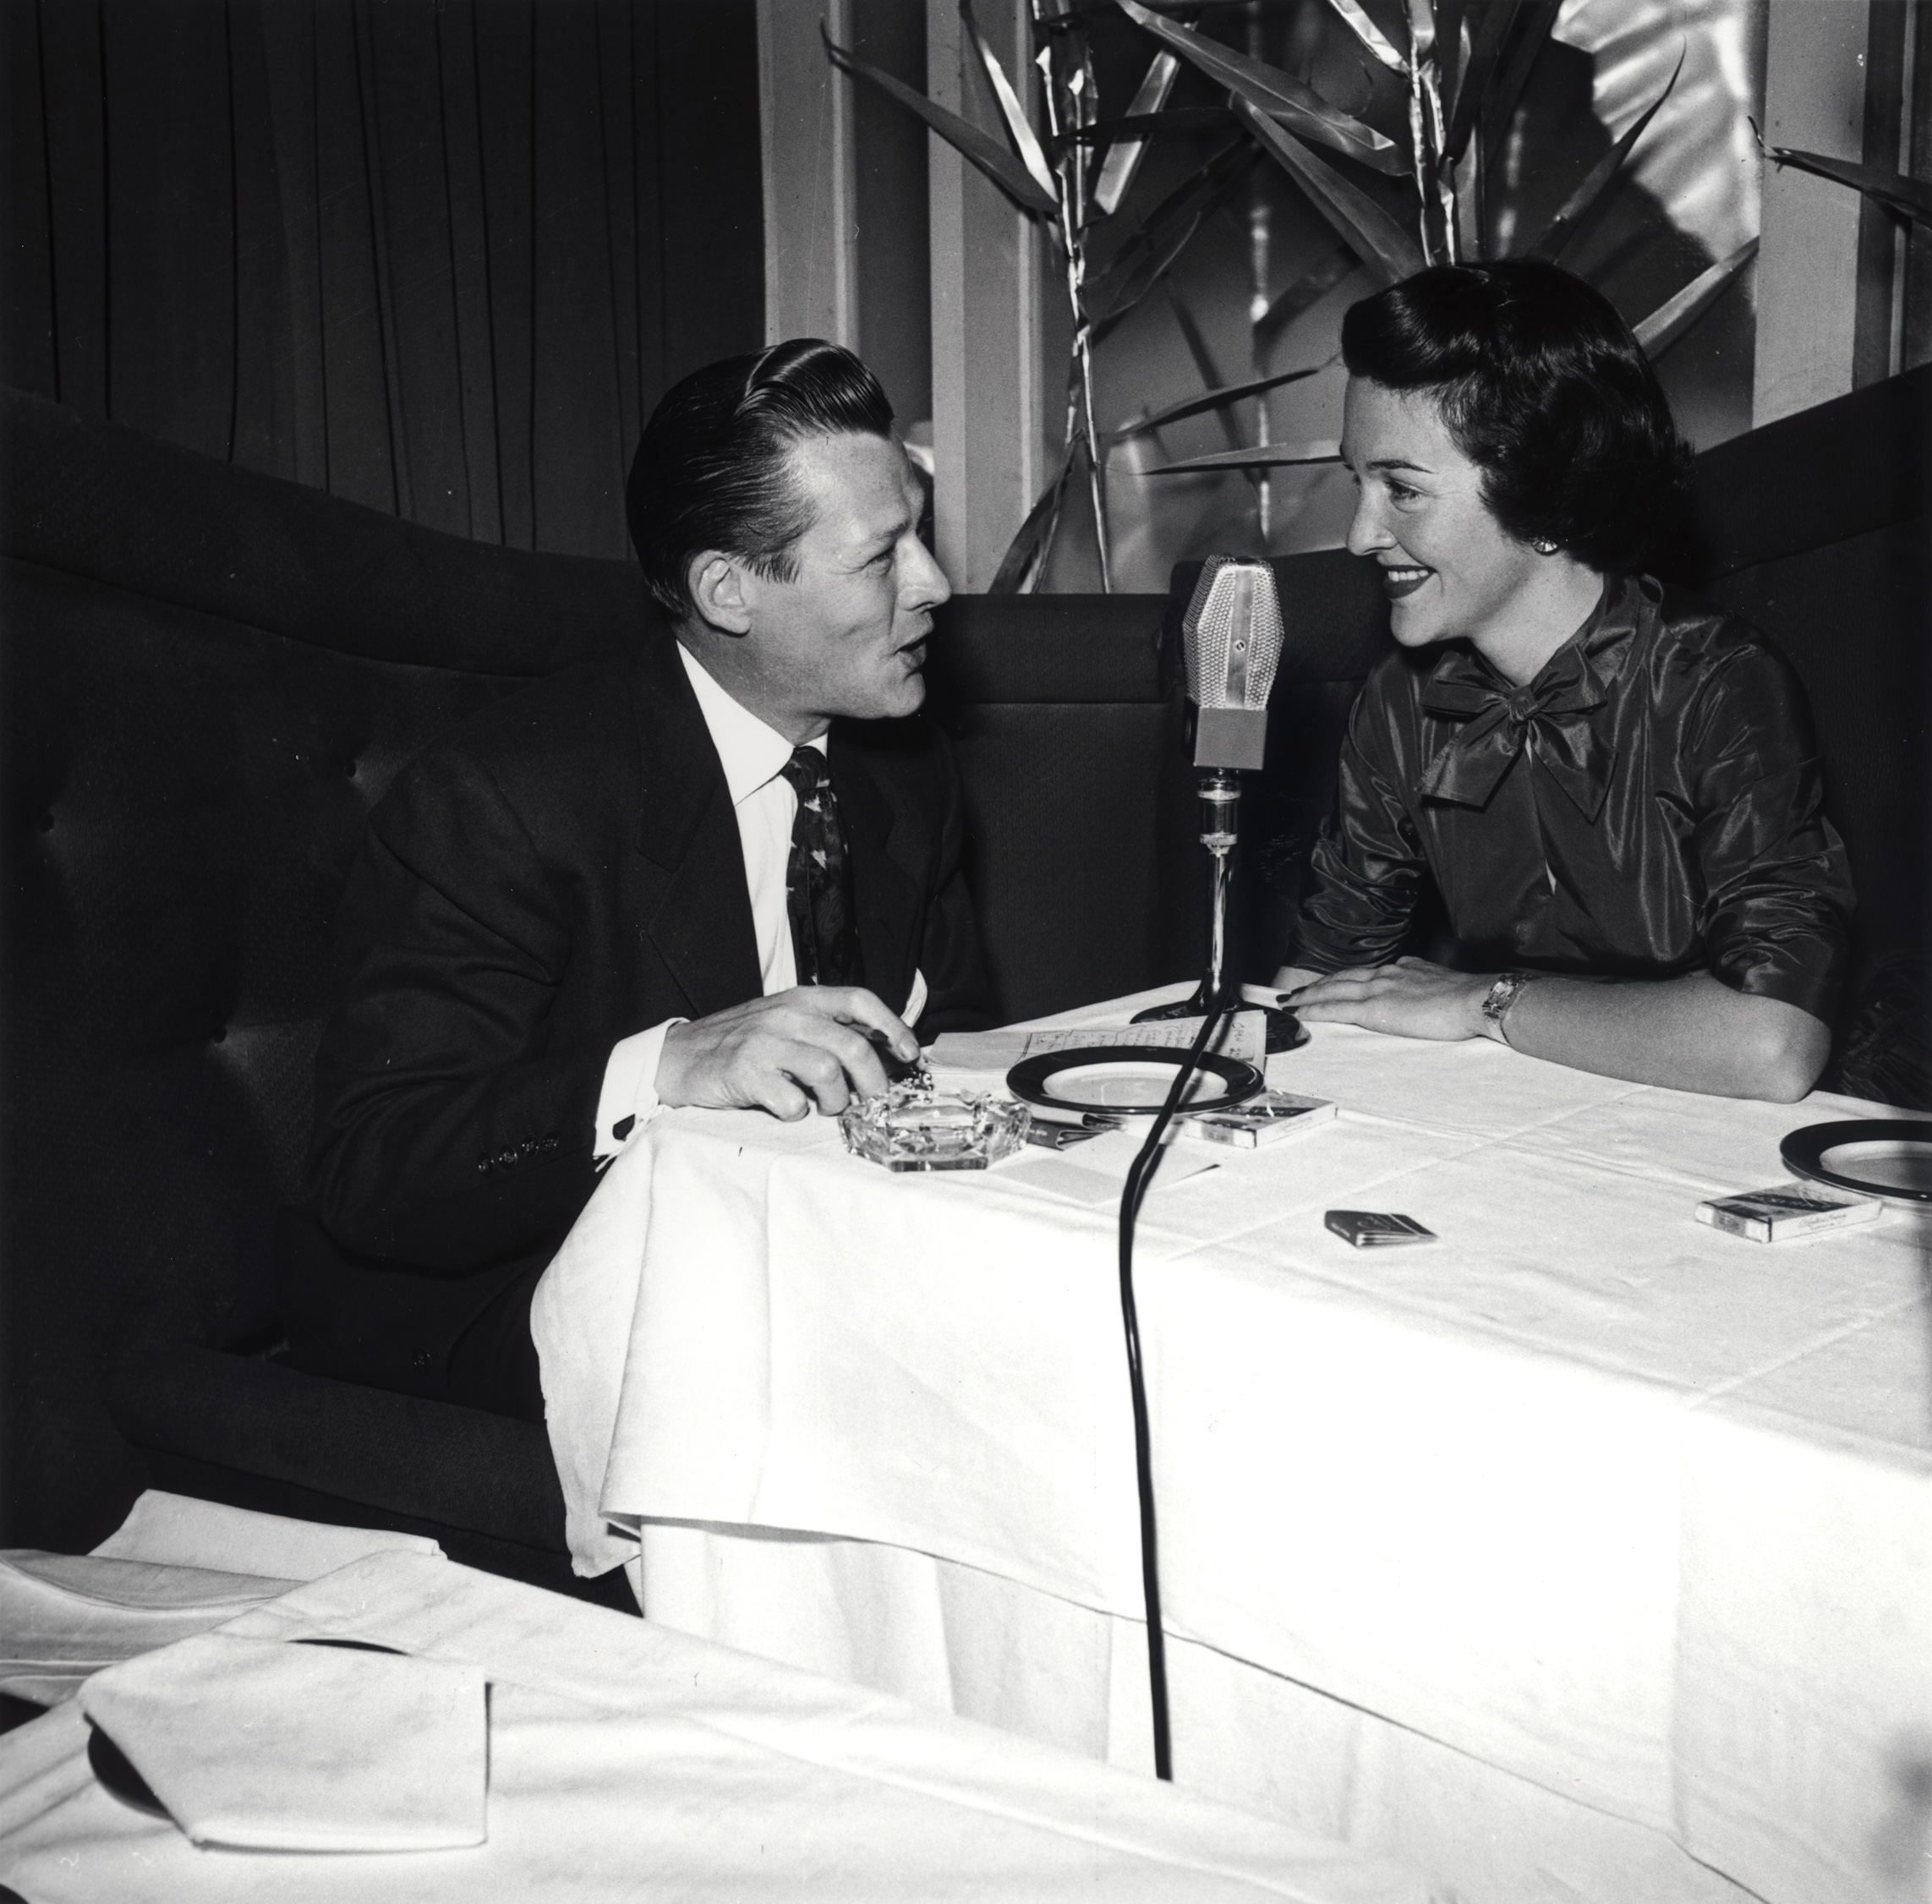 Nancy Reagan being interviewed by unidentified man in an unknown restaurant